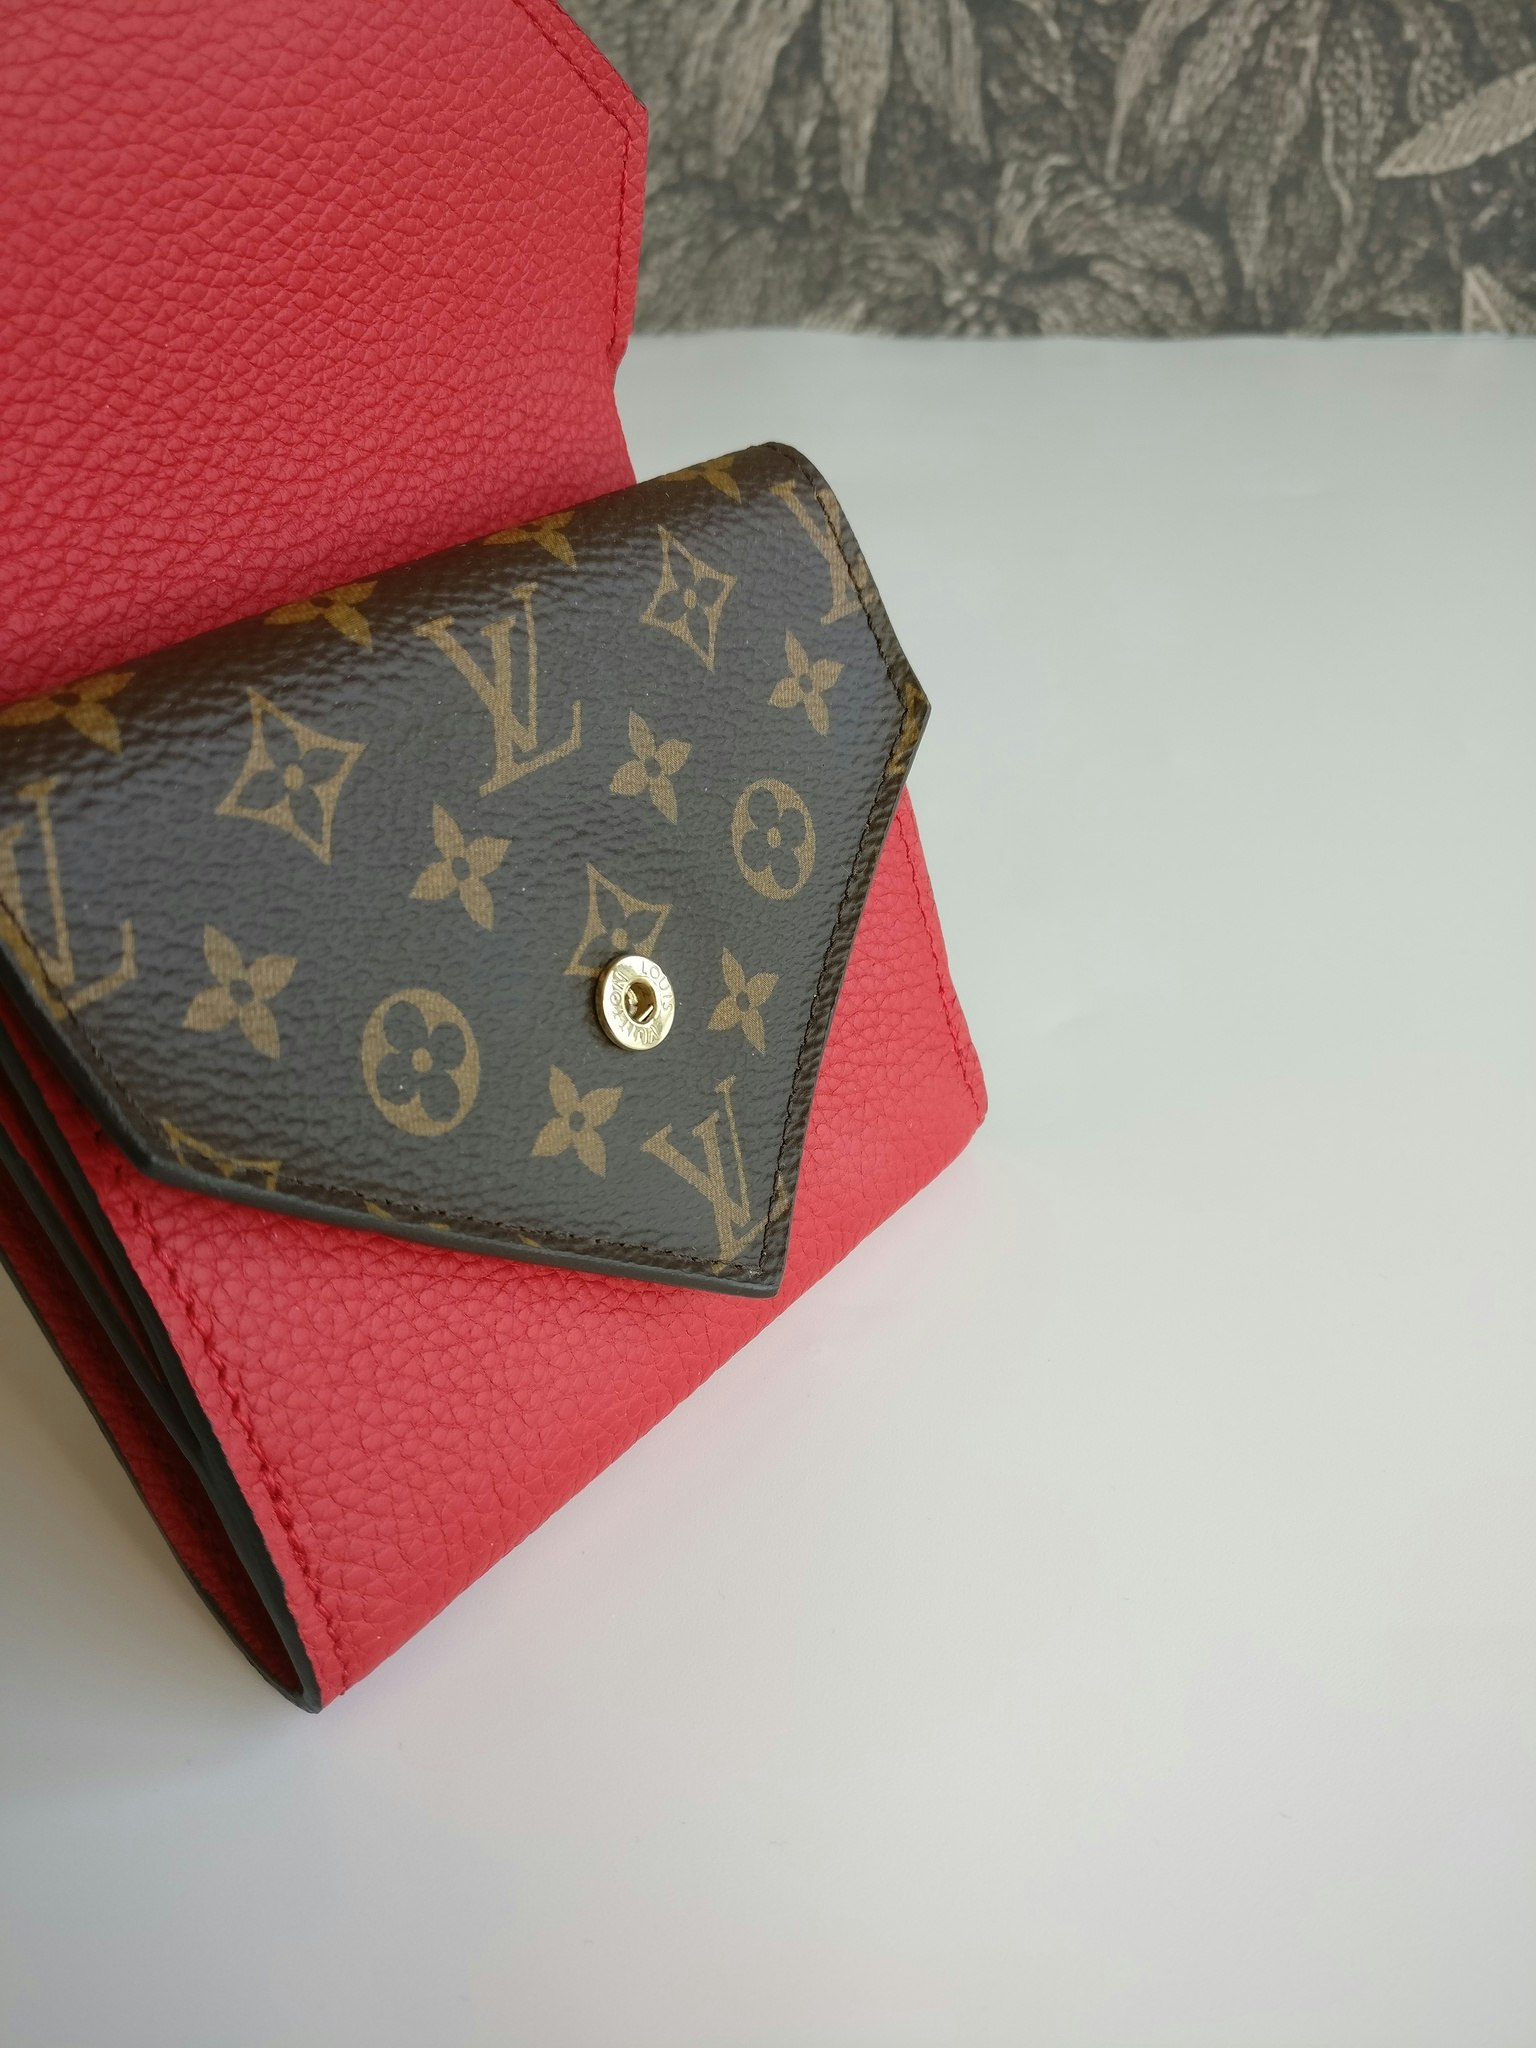 Mua Ví Nữ Louis Vuitton LV Discovery Compact Wallet Màu Xám  Louis Vuitton   Mua tại Vua Hàng Hiệu h035235